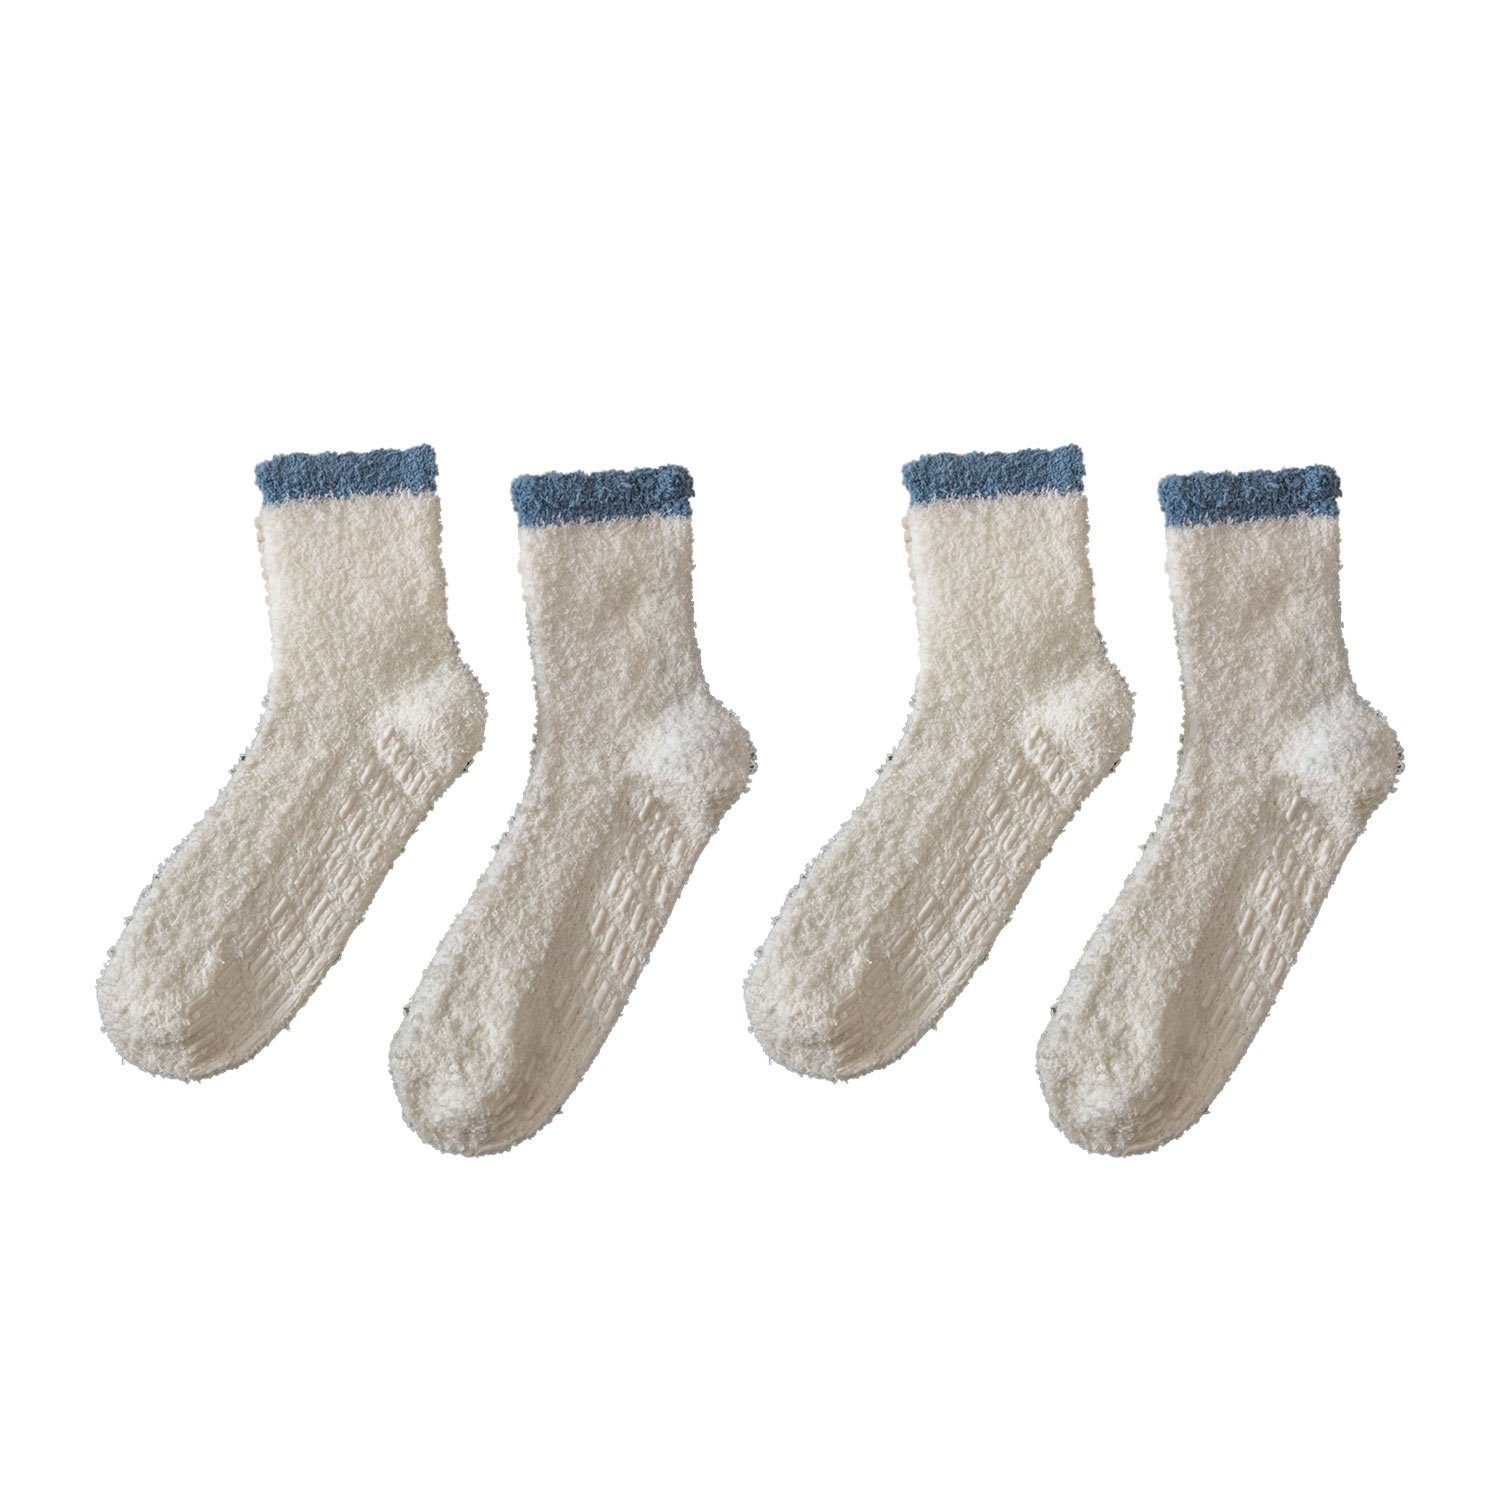 MAGICSHE Langsocken 2 Paare für Winter weiche flauschige Socken Rutschfeste und warme Fleece Socken weiß